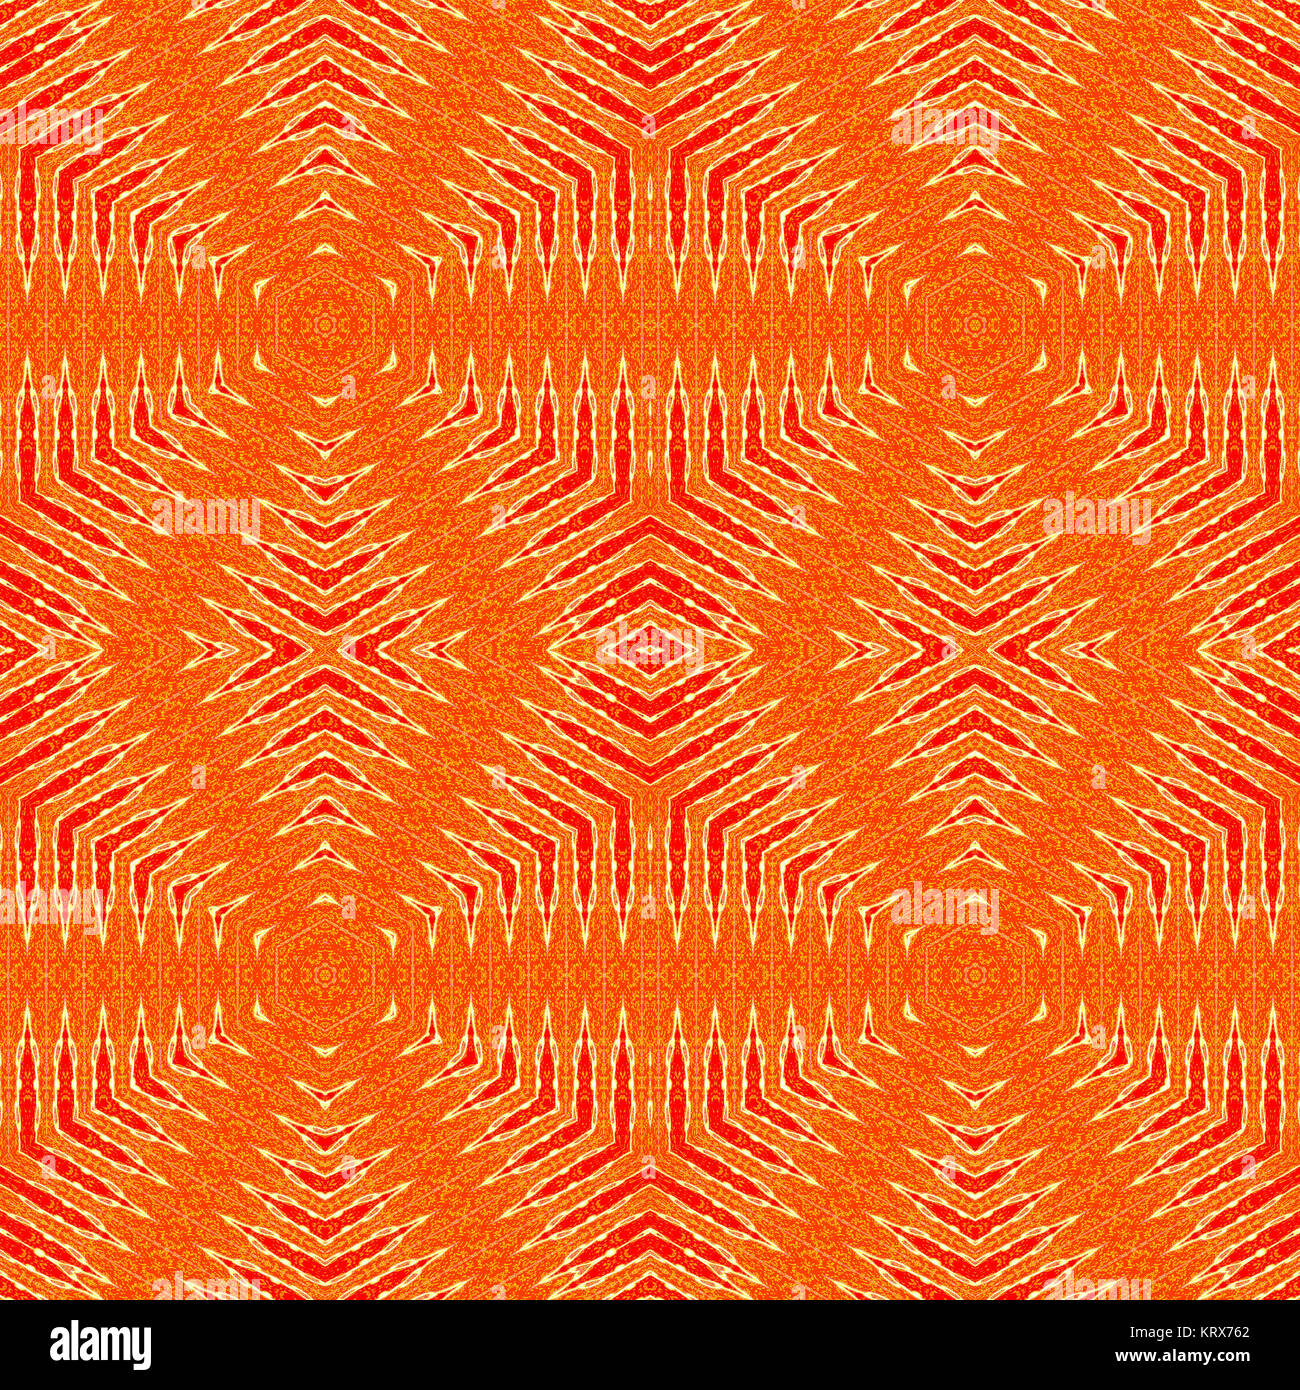 Geométrica abstracta de fondo sin fisuras. Patrón de diamantes regulares en tonos naranja con colores rojo y beige, elementos, vistoso y amplio. Foto de stock